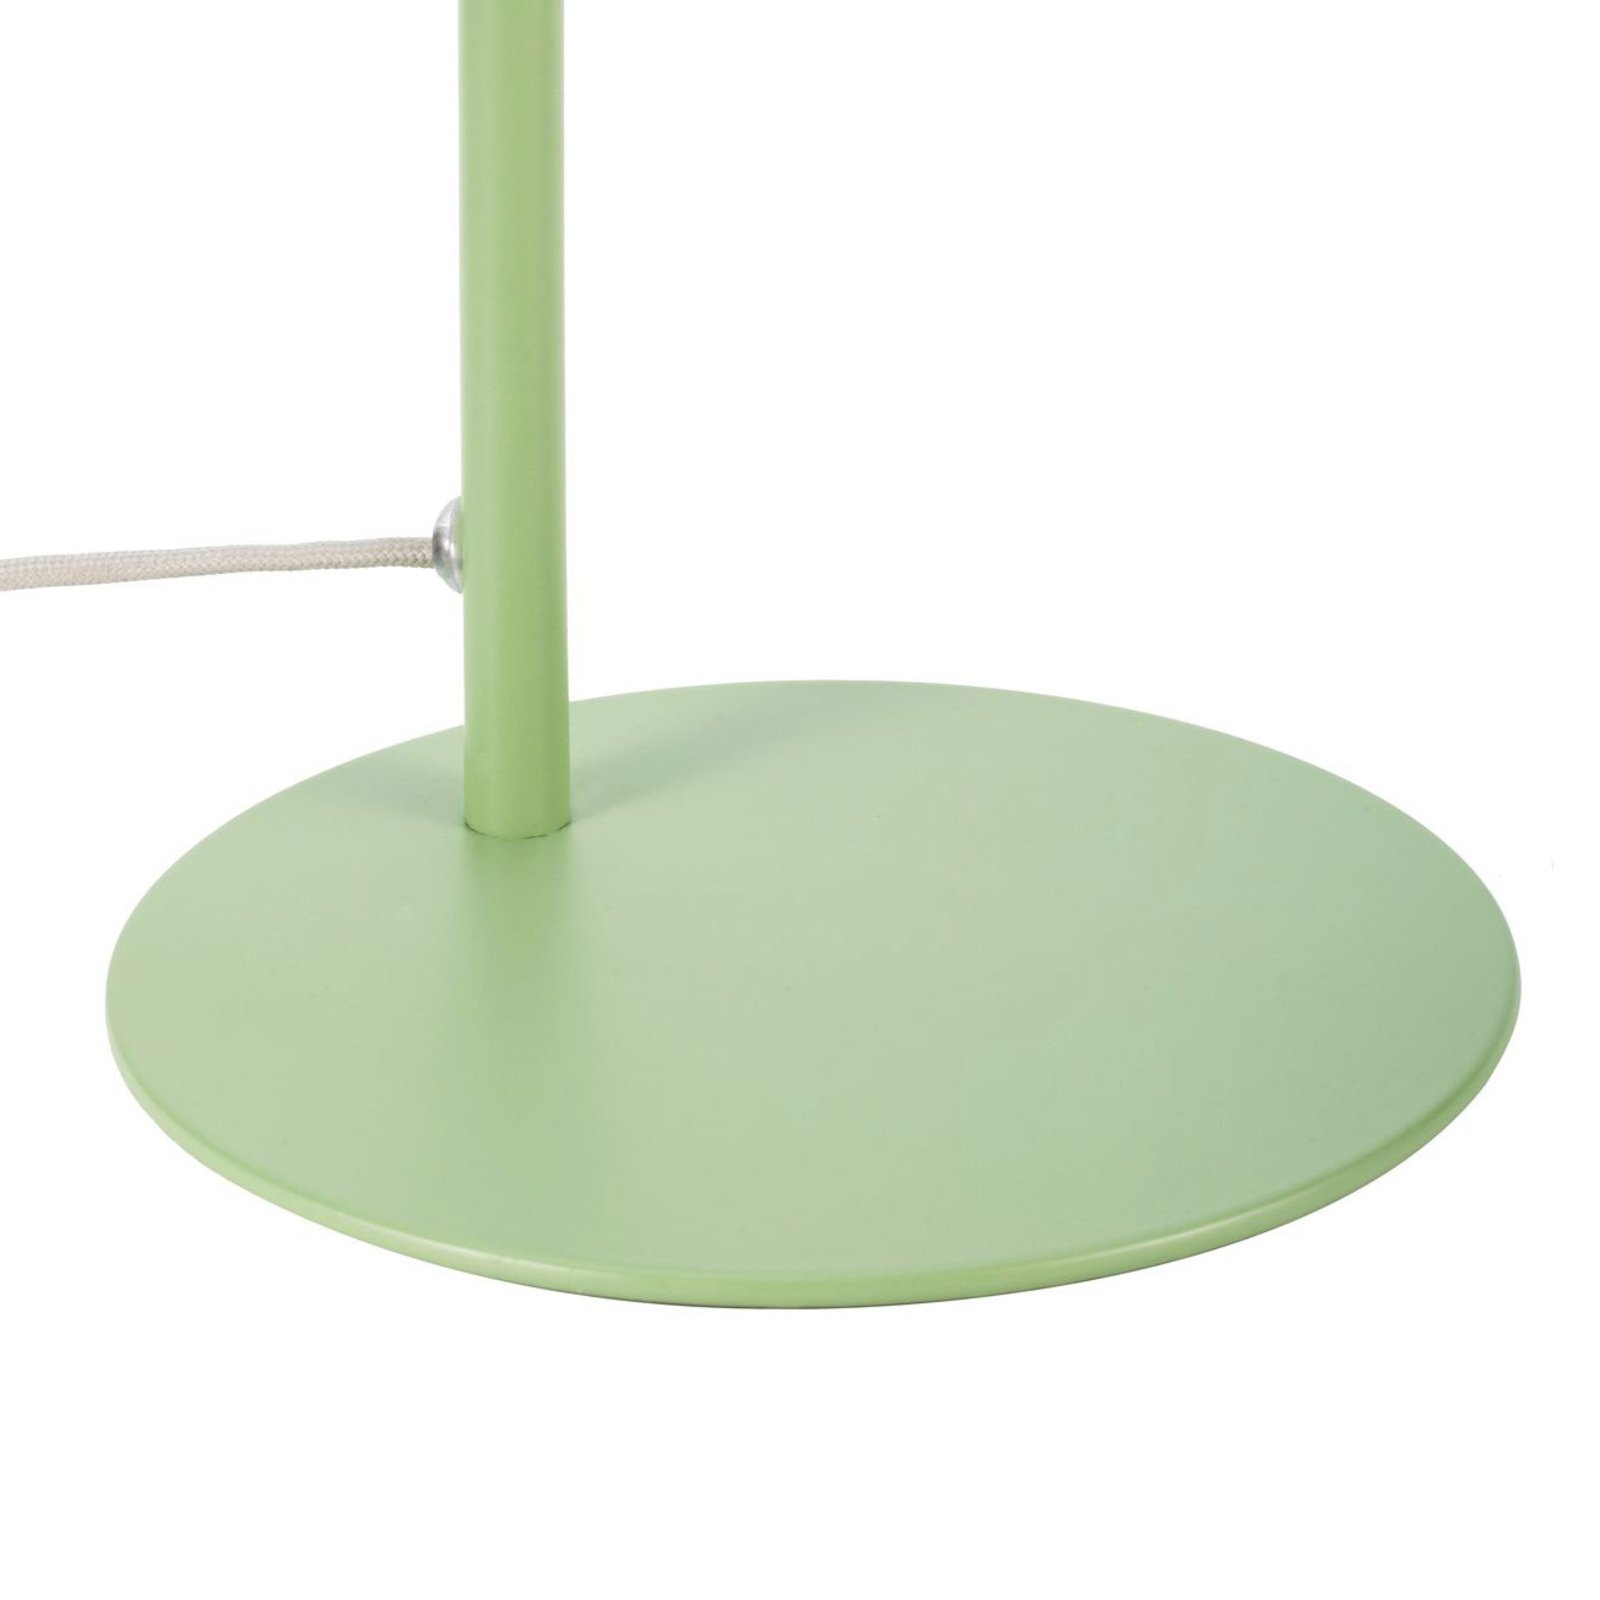 Pauleen True Pistachio table lamp in green